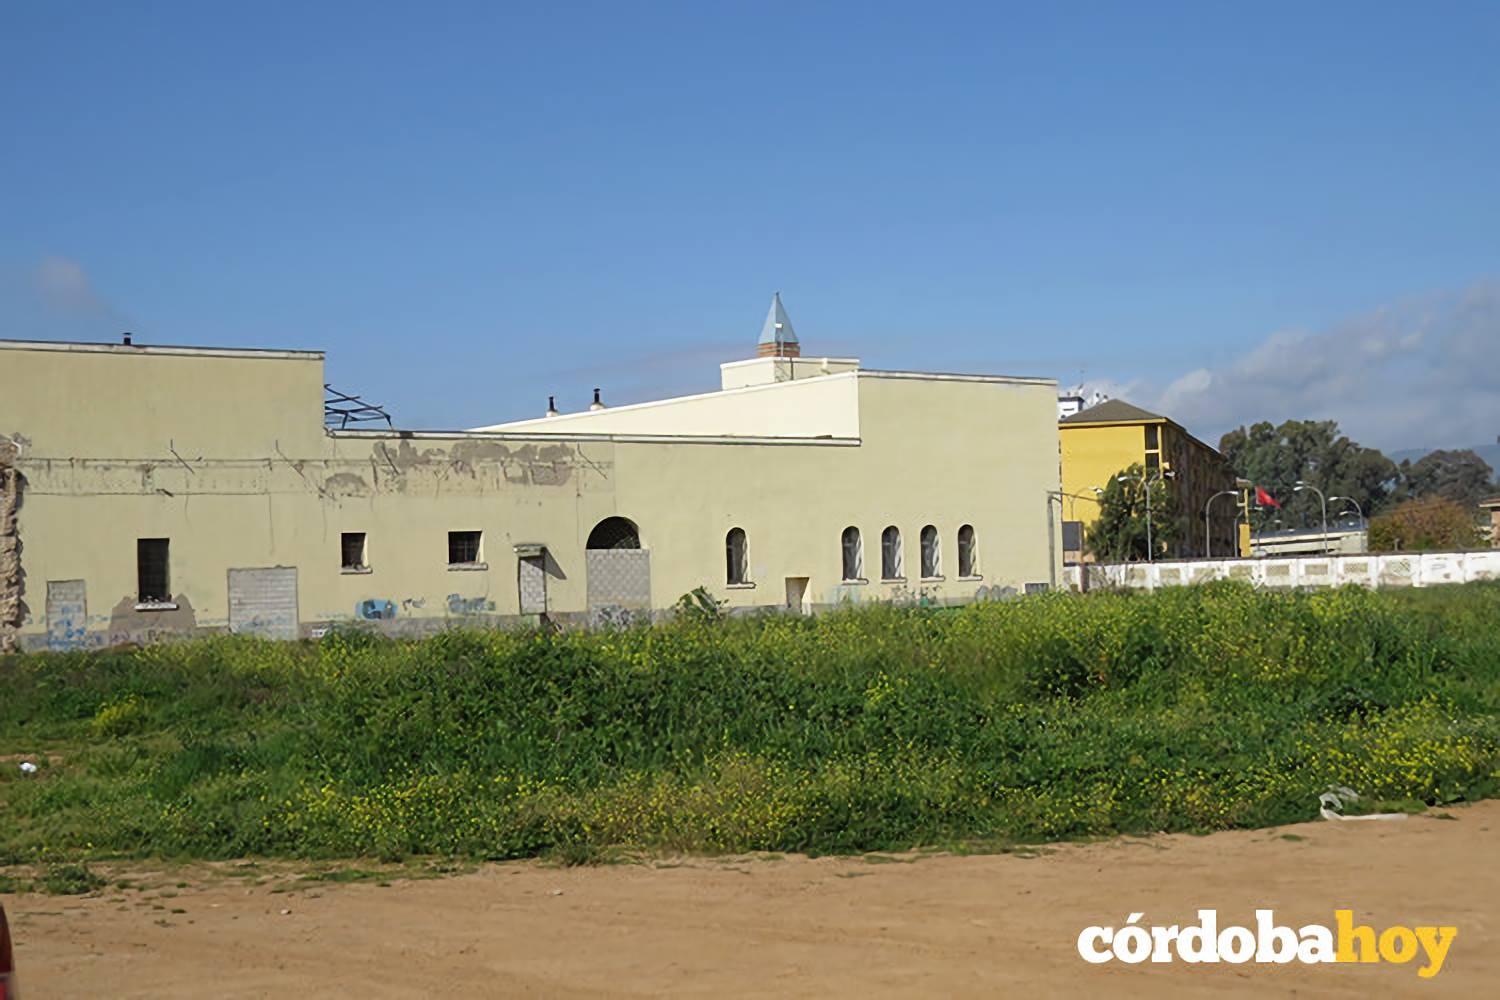 Los vecinos de Levante exigen conocer el proyecto de viviendas en la antigua prisión